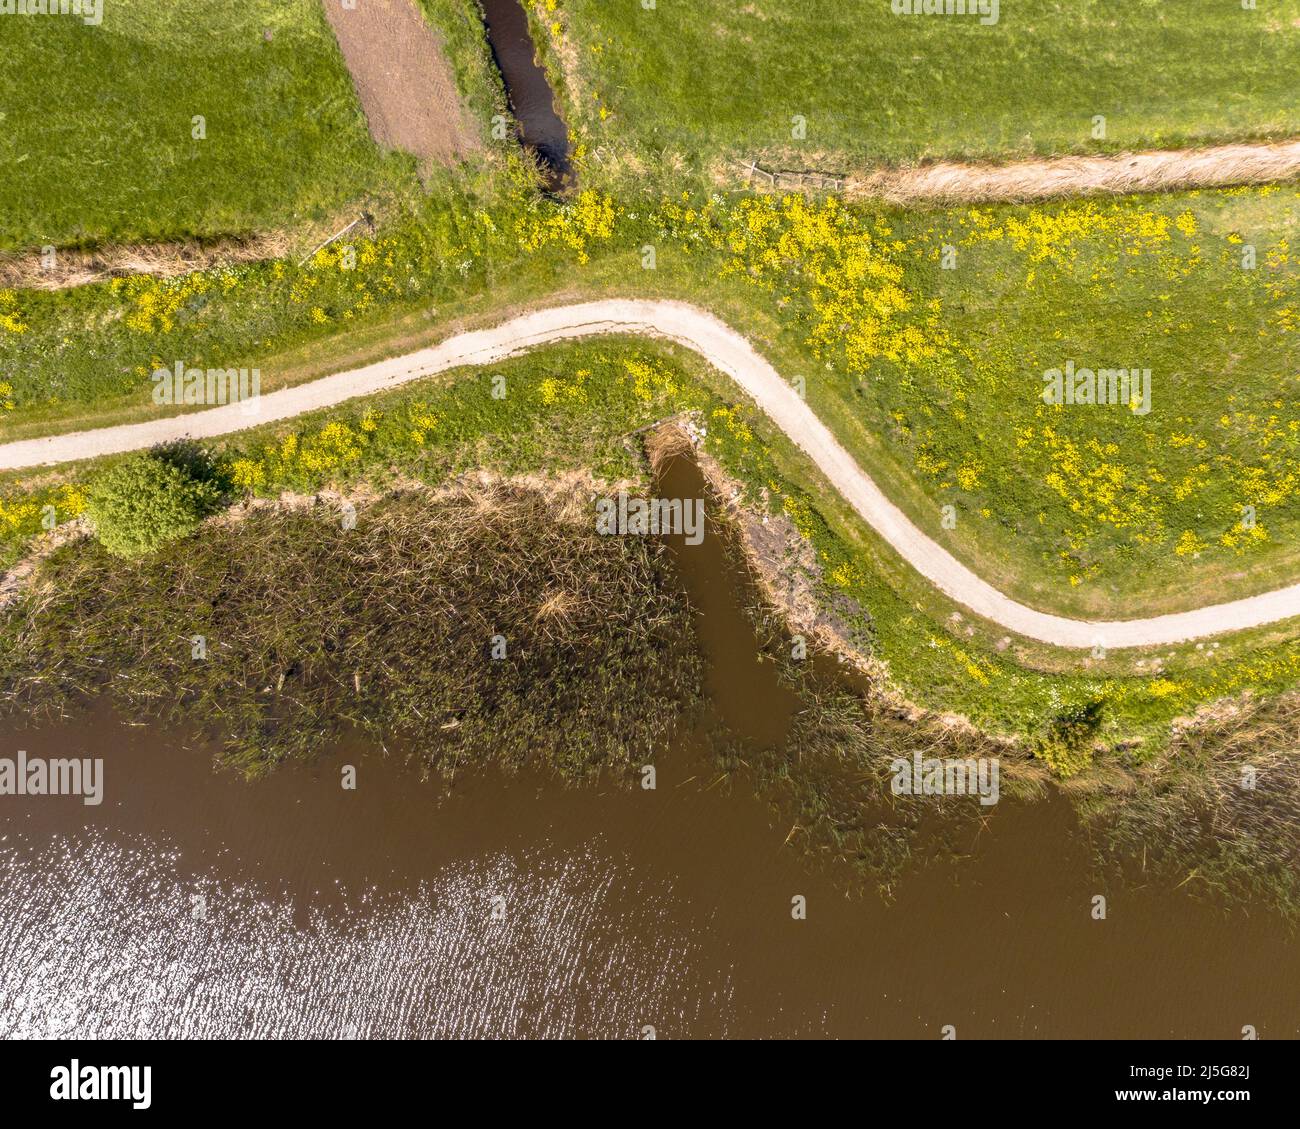 Scène aérienne de printemps de la rivière hollandaise près de Boornzwaag. Piste cyclable sur la digue qui serpend à travers la polder avec des fleurs jaunes. Frise, pays-Bas Banque D'Images